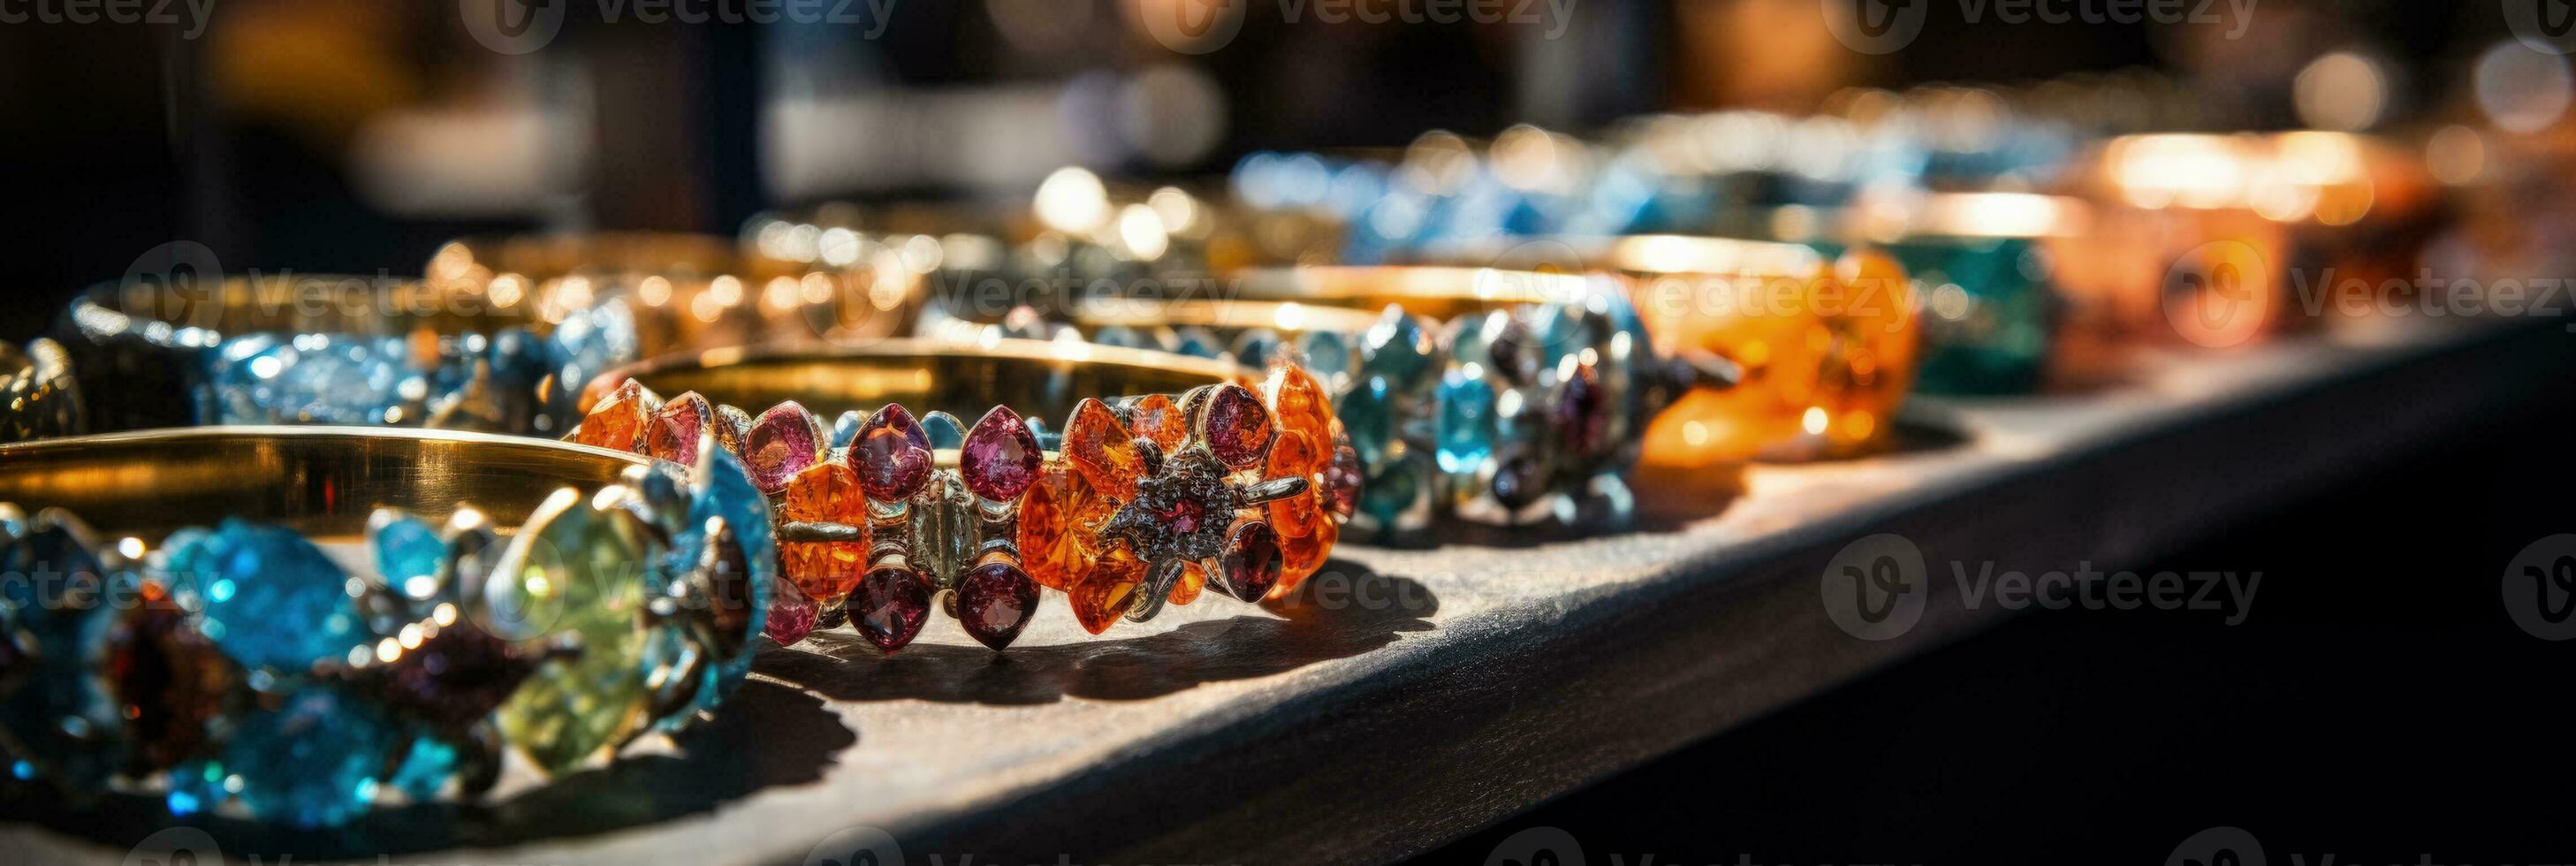 Indisch vakantie markt straalt uit met glinsterende voortreffelijk sieraden wordt weergegeven foto